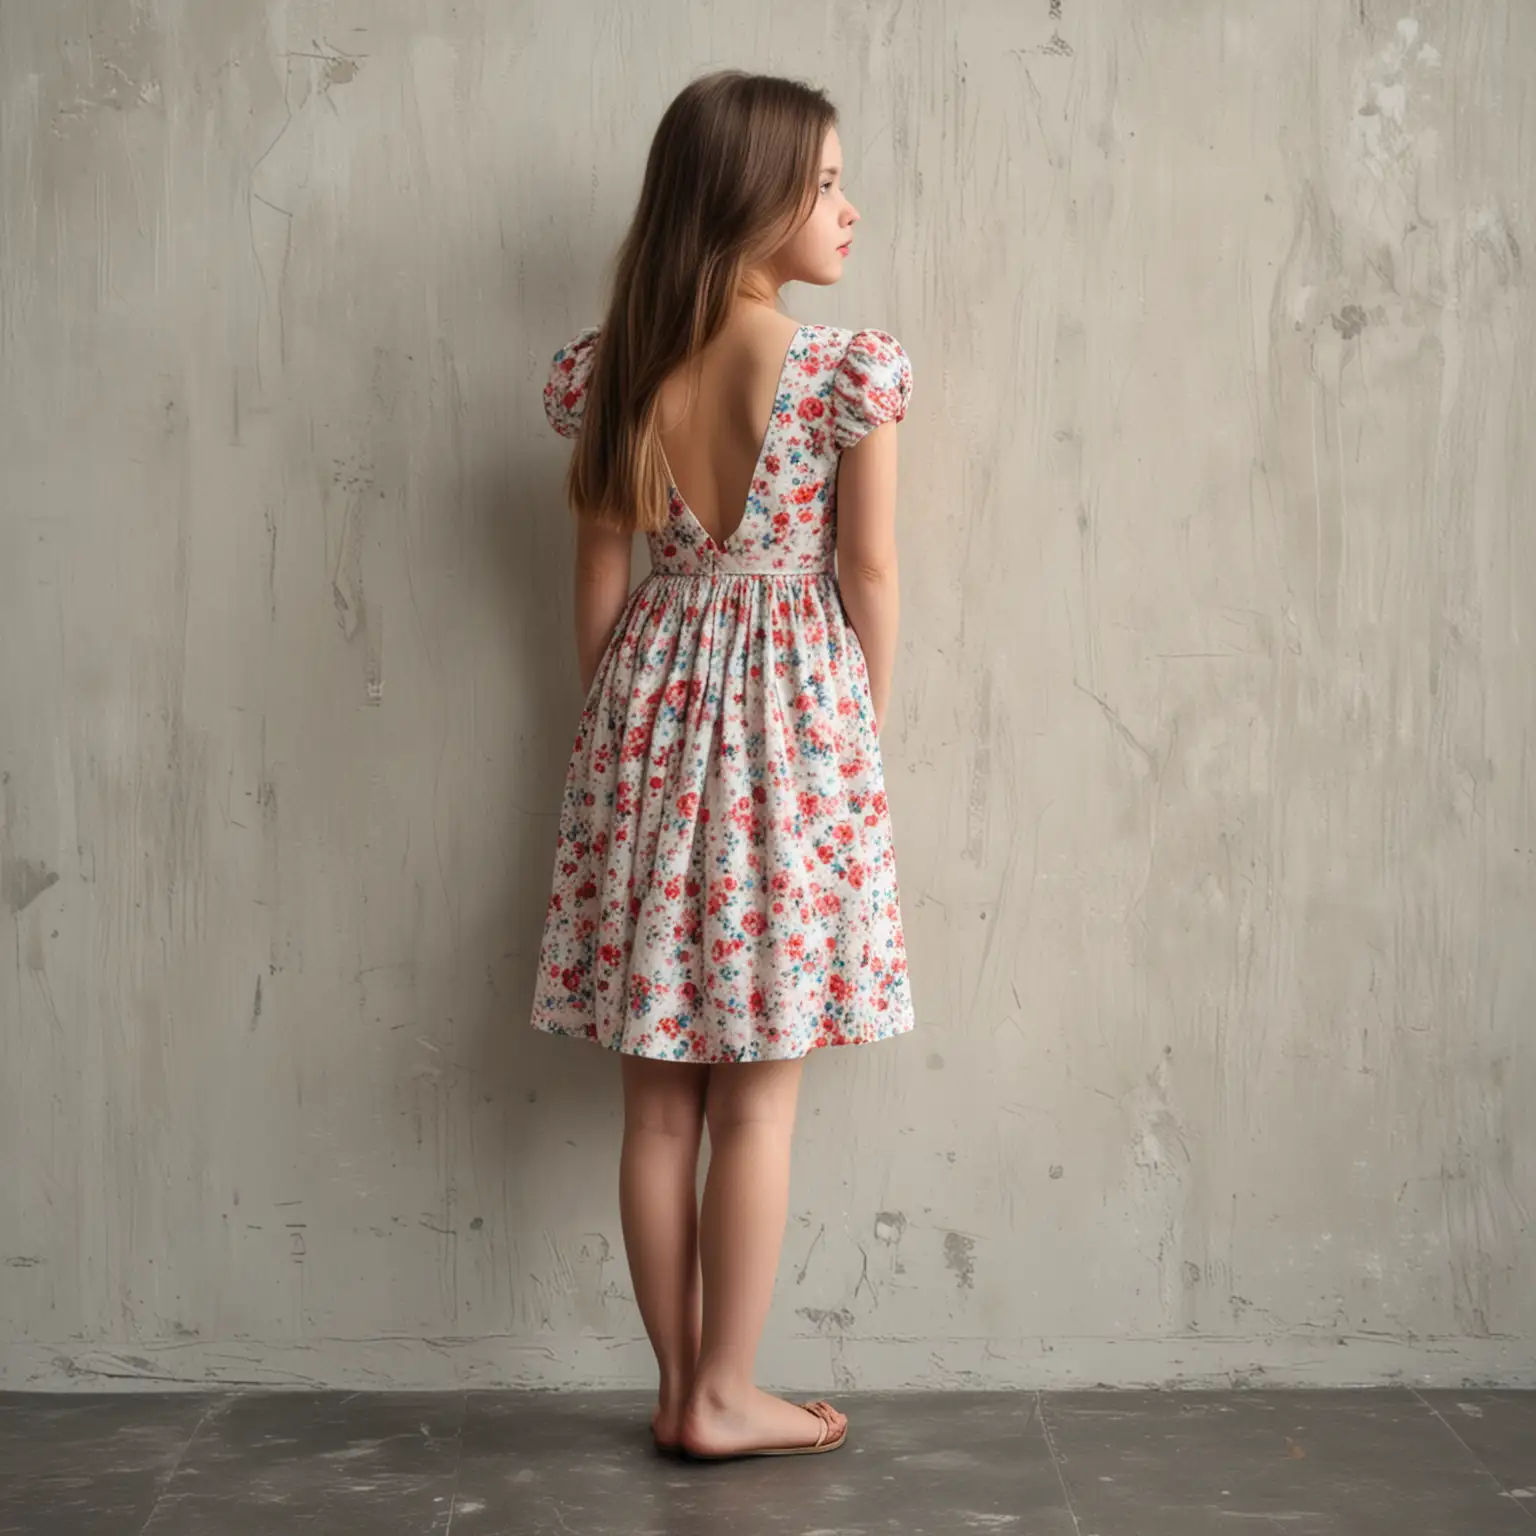 девушка в платье стоит спиной и смотрит в стену